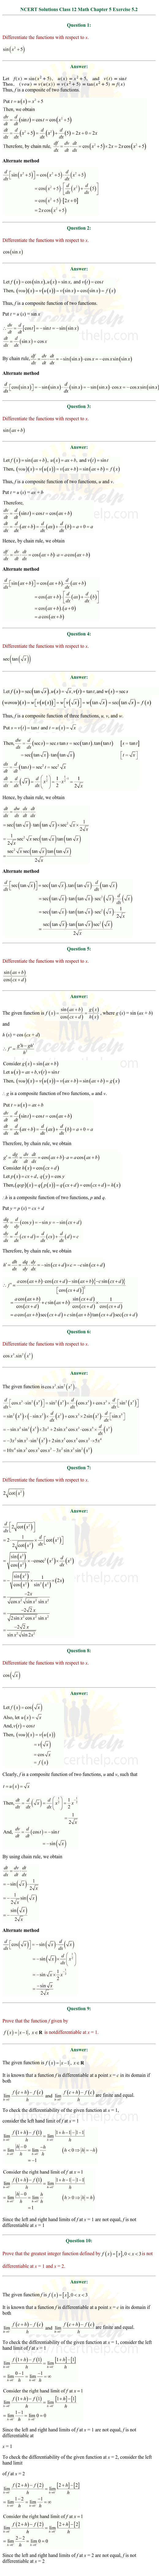 ex.5.2 Class 12 Math Chapter 5 ncert solutions